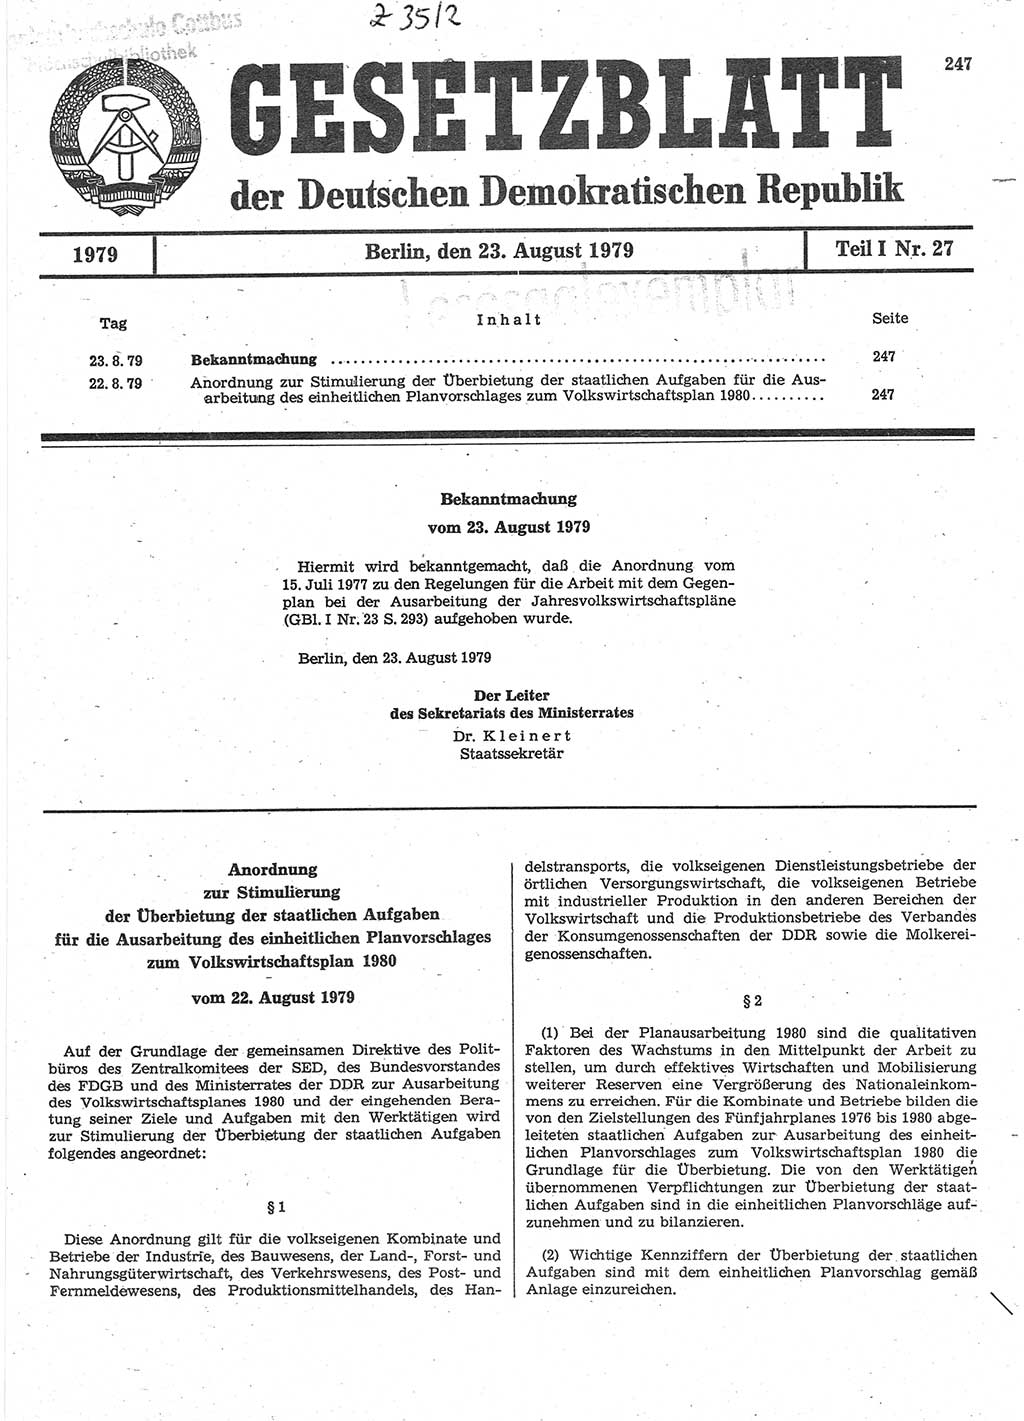 Gesetzblatt (GBl.) der Deutschen Demokratischen Republik (DDR) Teil Ⅰ 1979, Seite 247 (GBl. DDR Ⅰ 1979, S. 247)